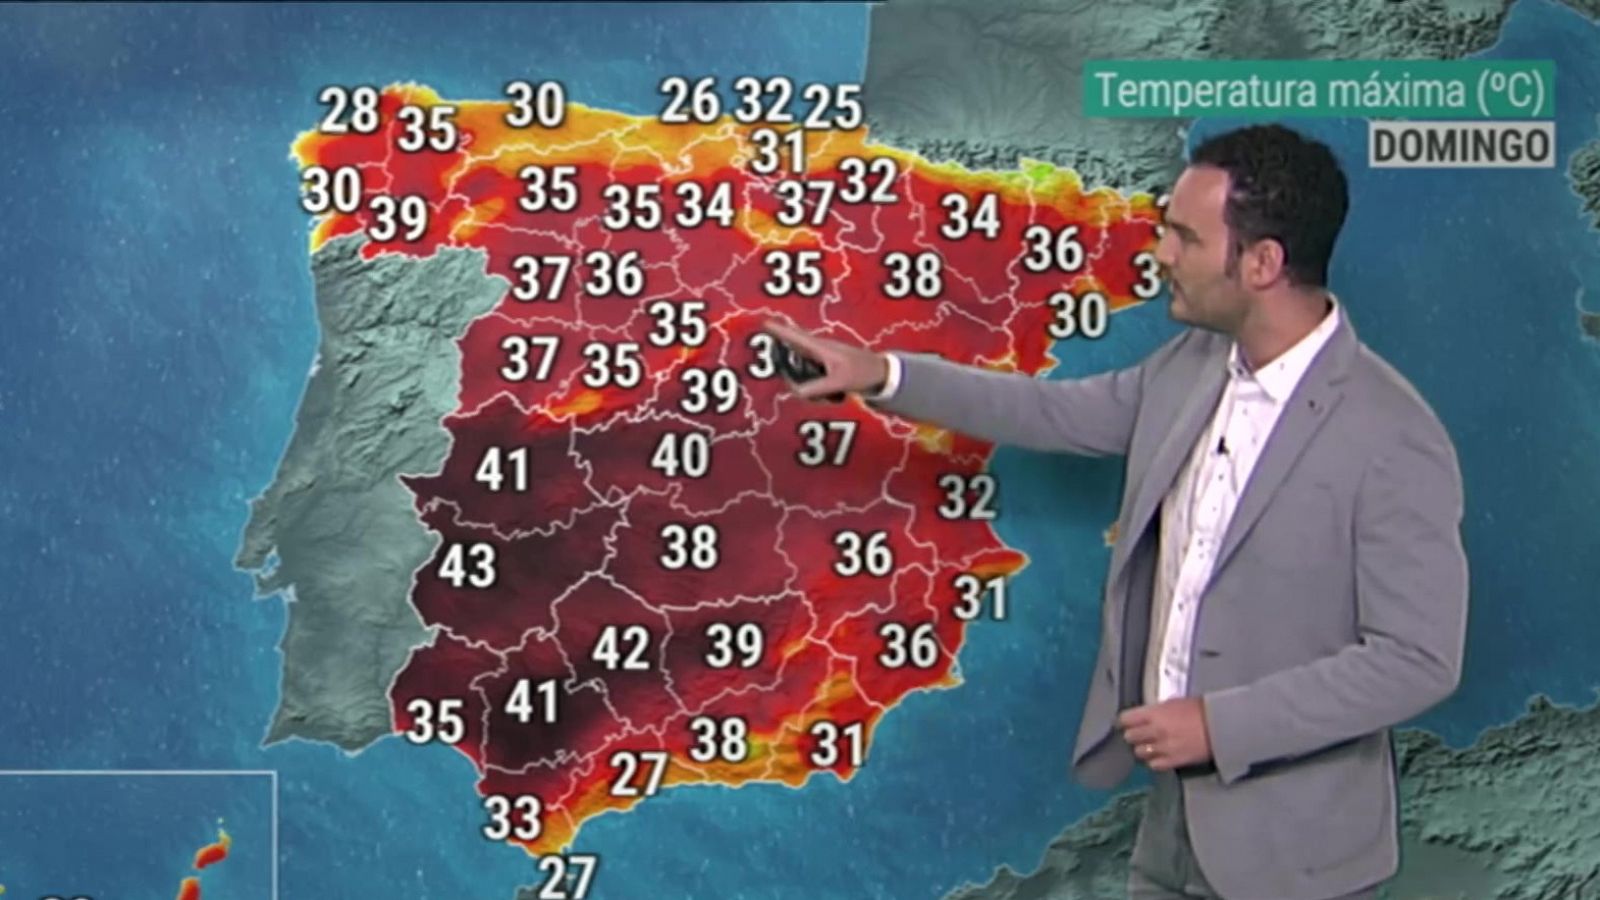 Temperaturas muy altas en Canarias, Andalucía, Galicia y Extremadura